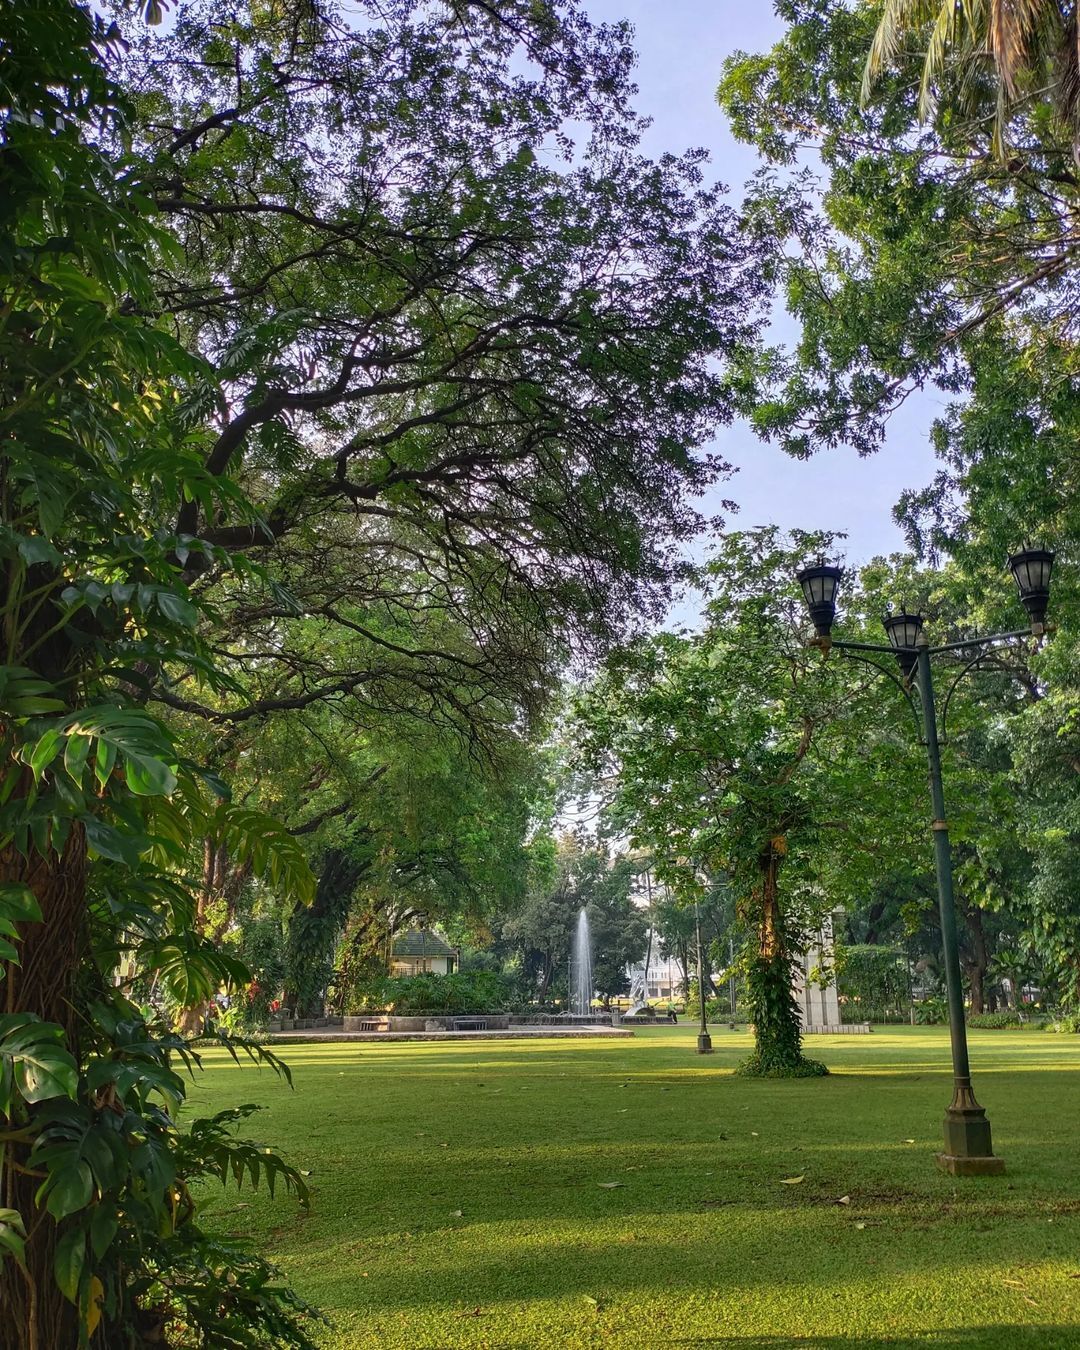 Fasilitas Taman Suropati Jakarta Pusat Image From @photo_dhi